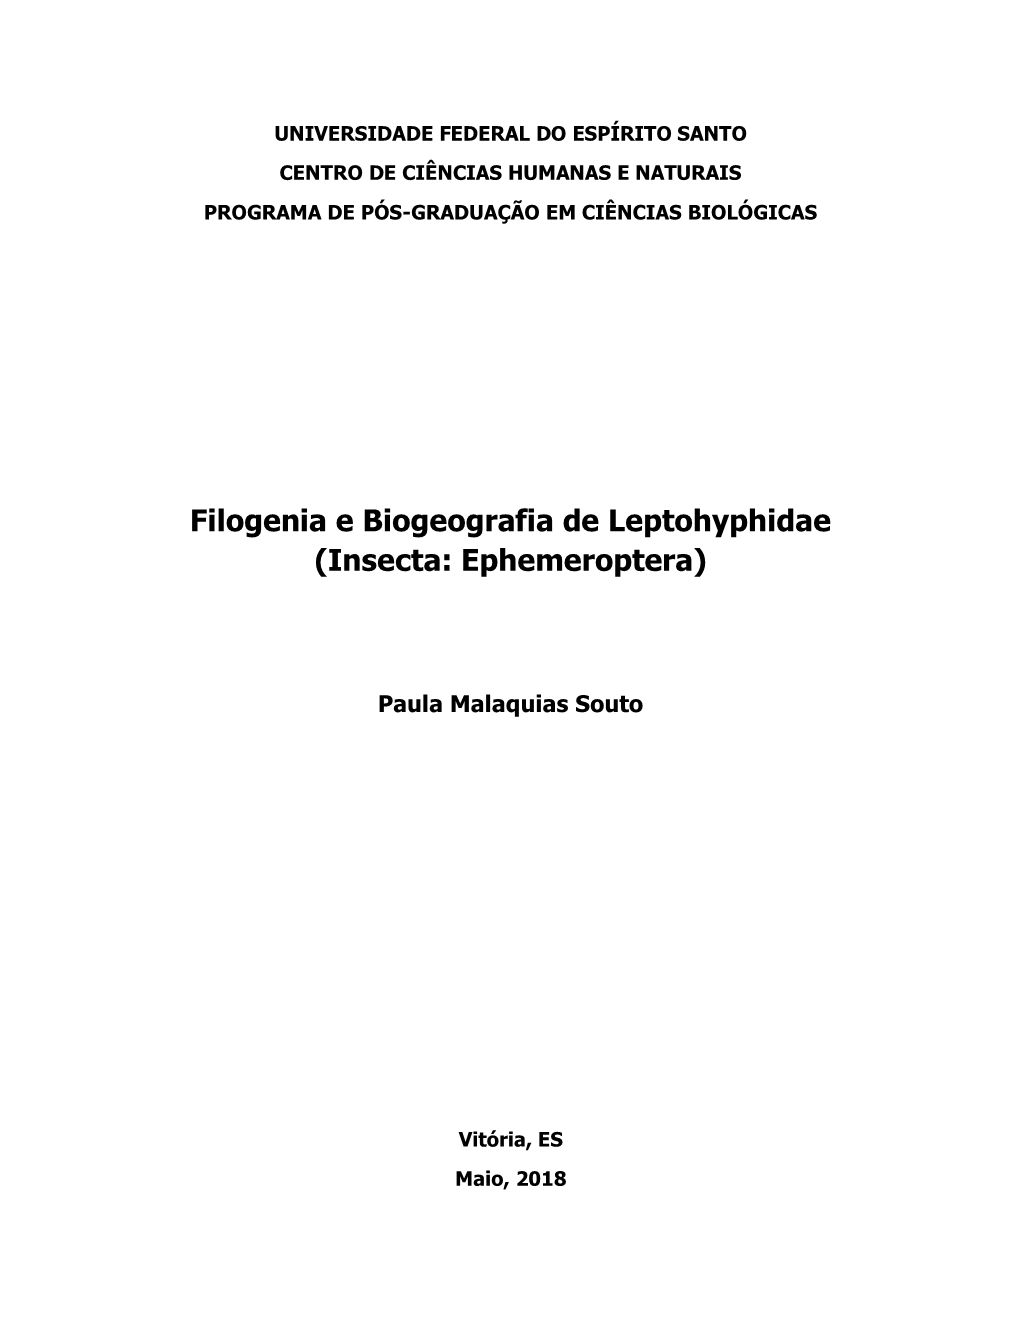 Filogenia E Biogeografia De Leptohyphidae (Insecta: Ephemeroptera)